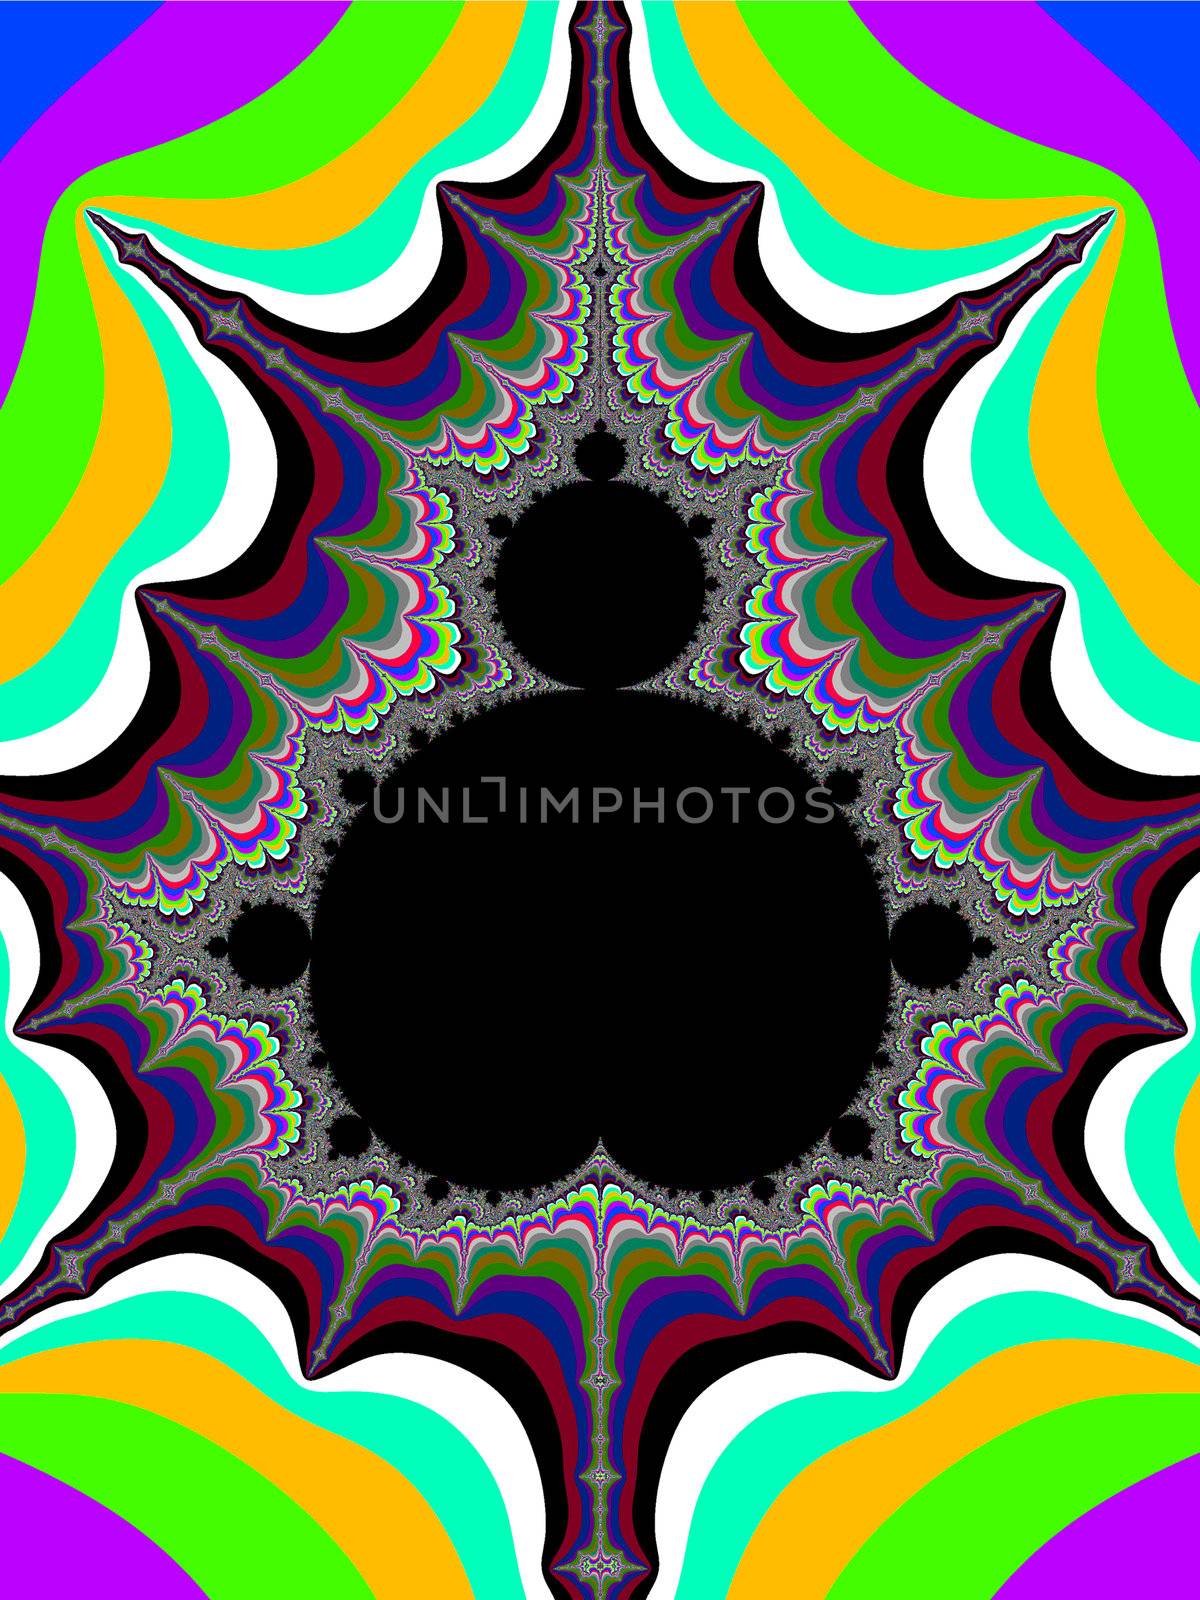 Fractal Mandelbrot set coloured illustration or background